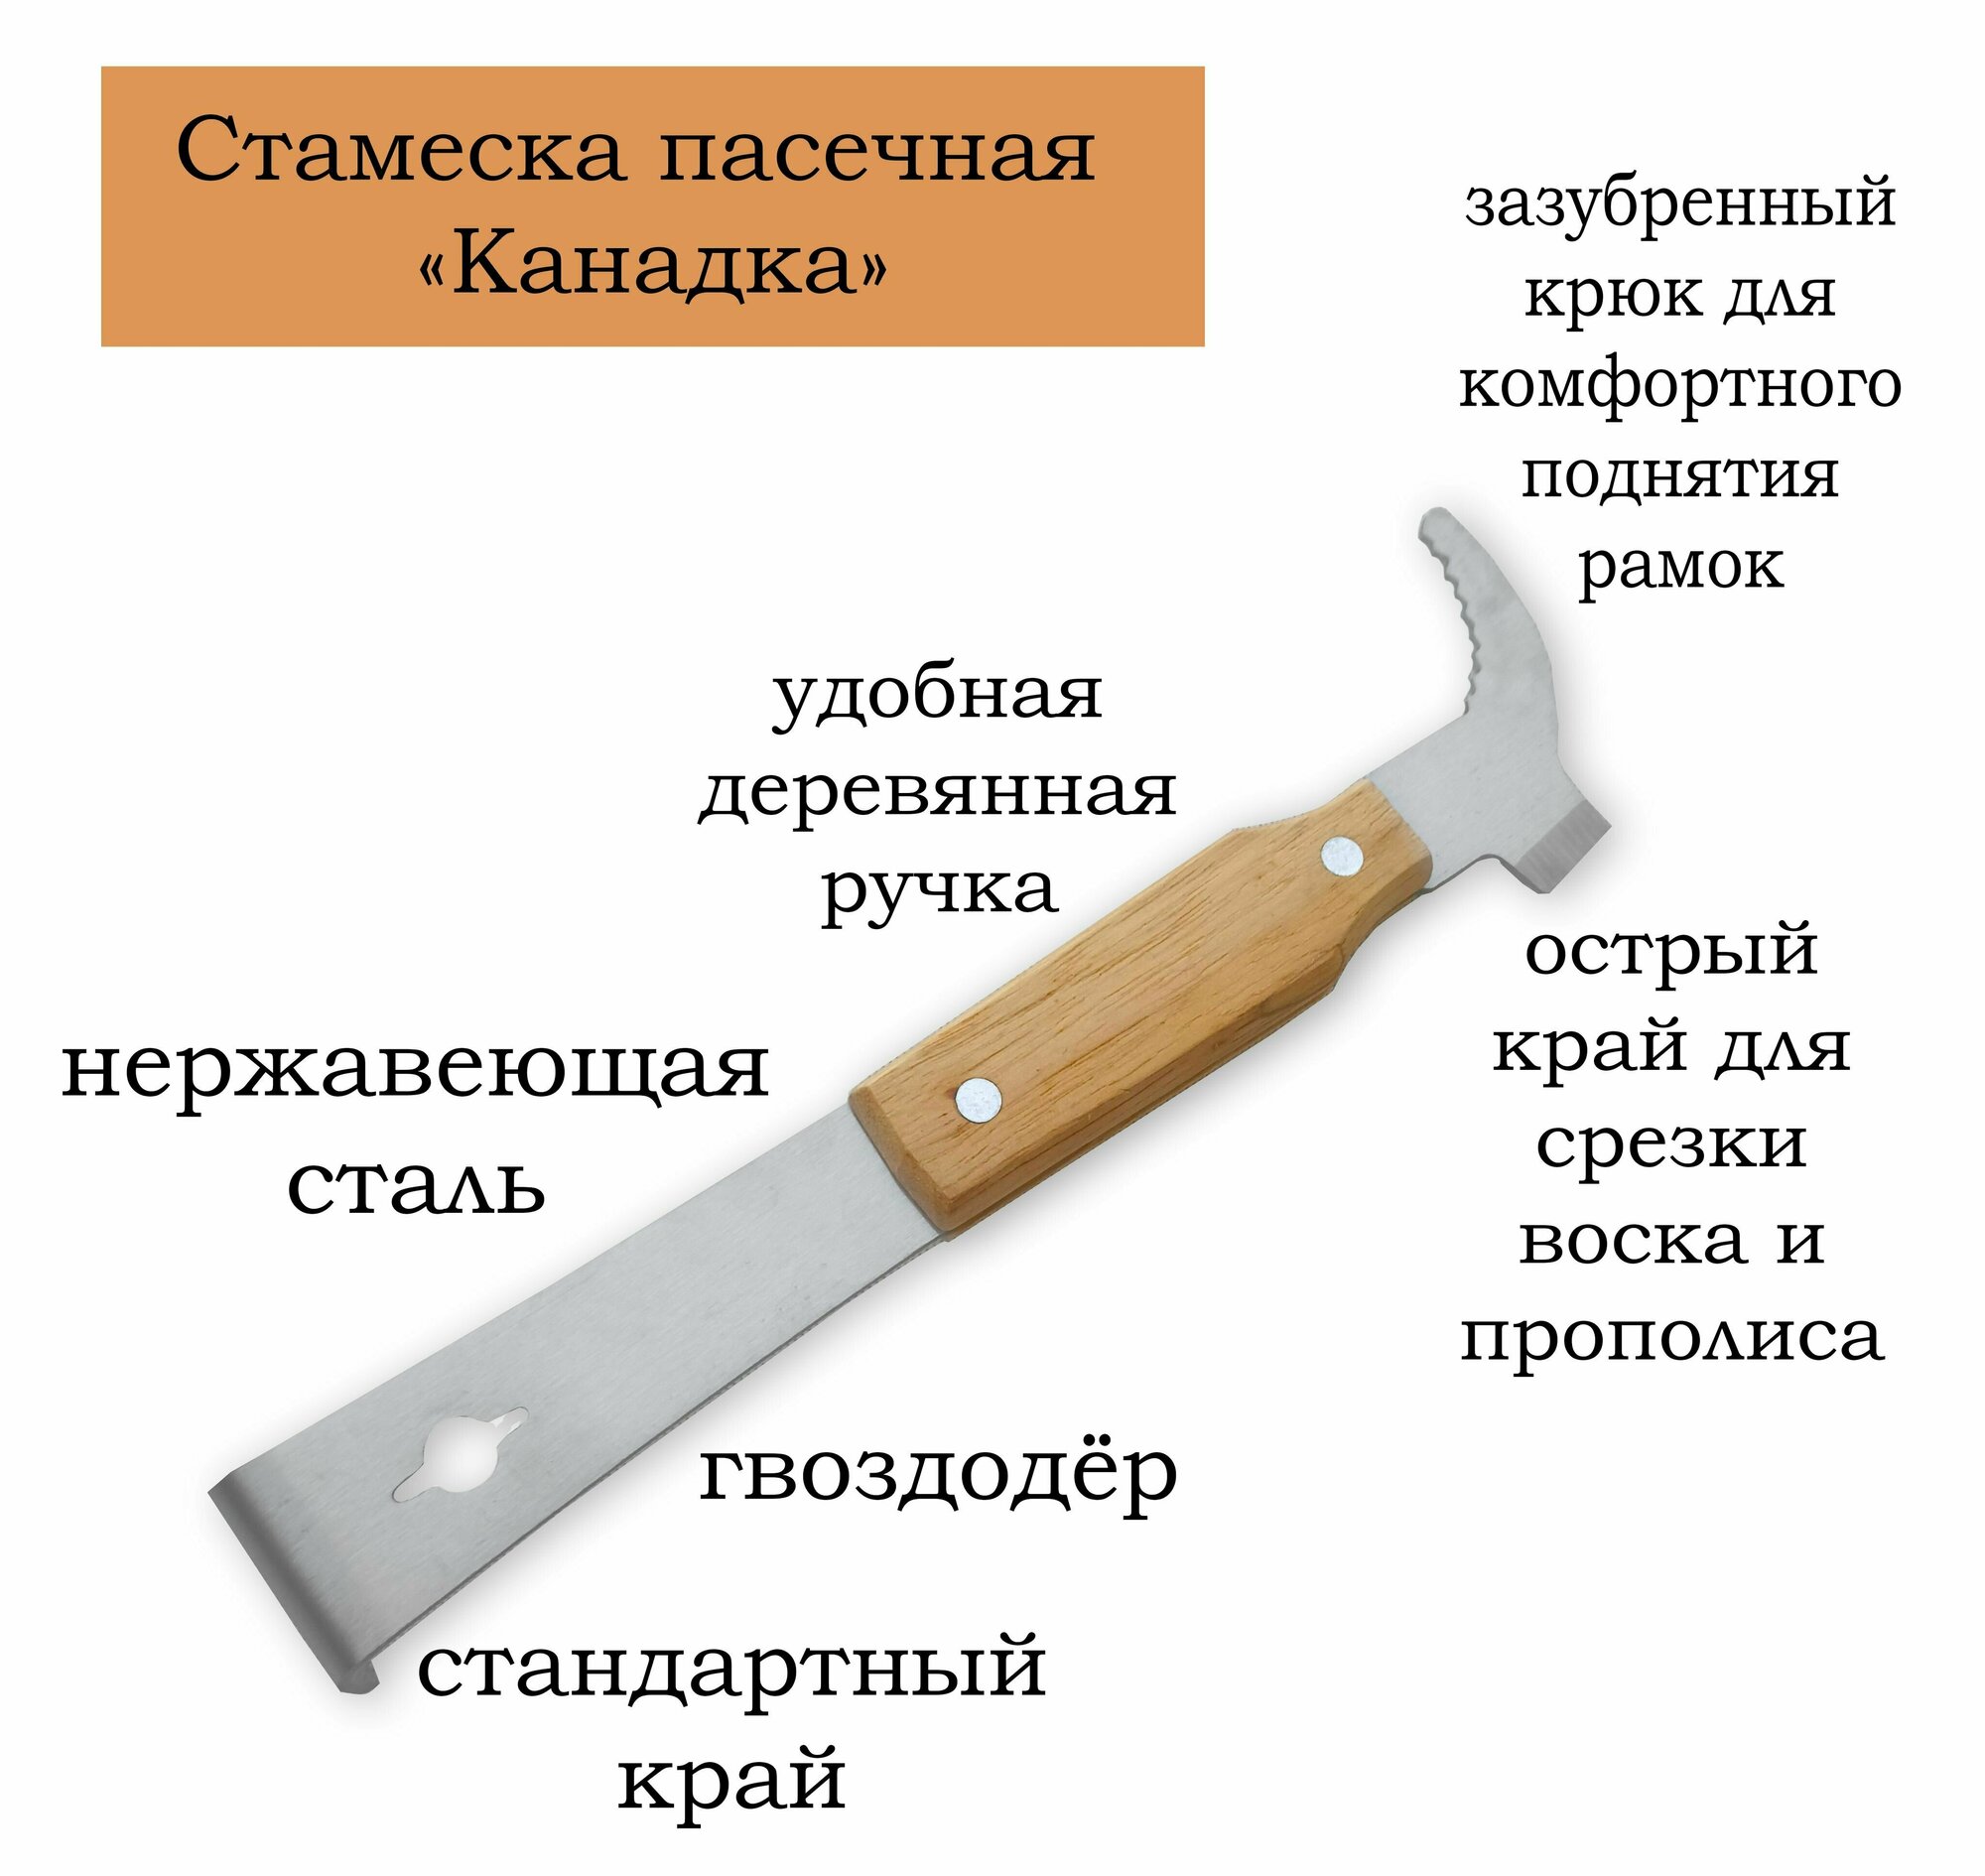 Стамеска пасечная 260 мм с зазубренным крючком и гвоздодёром нержавейка деревянная ручка